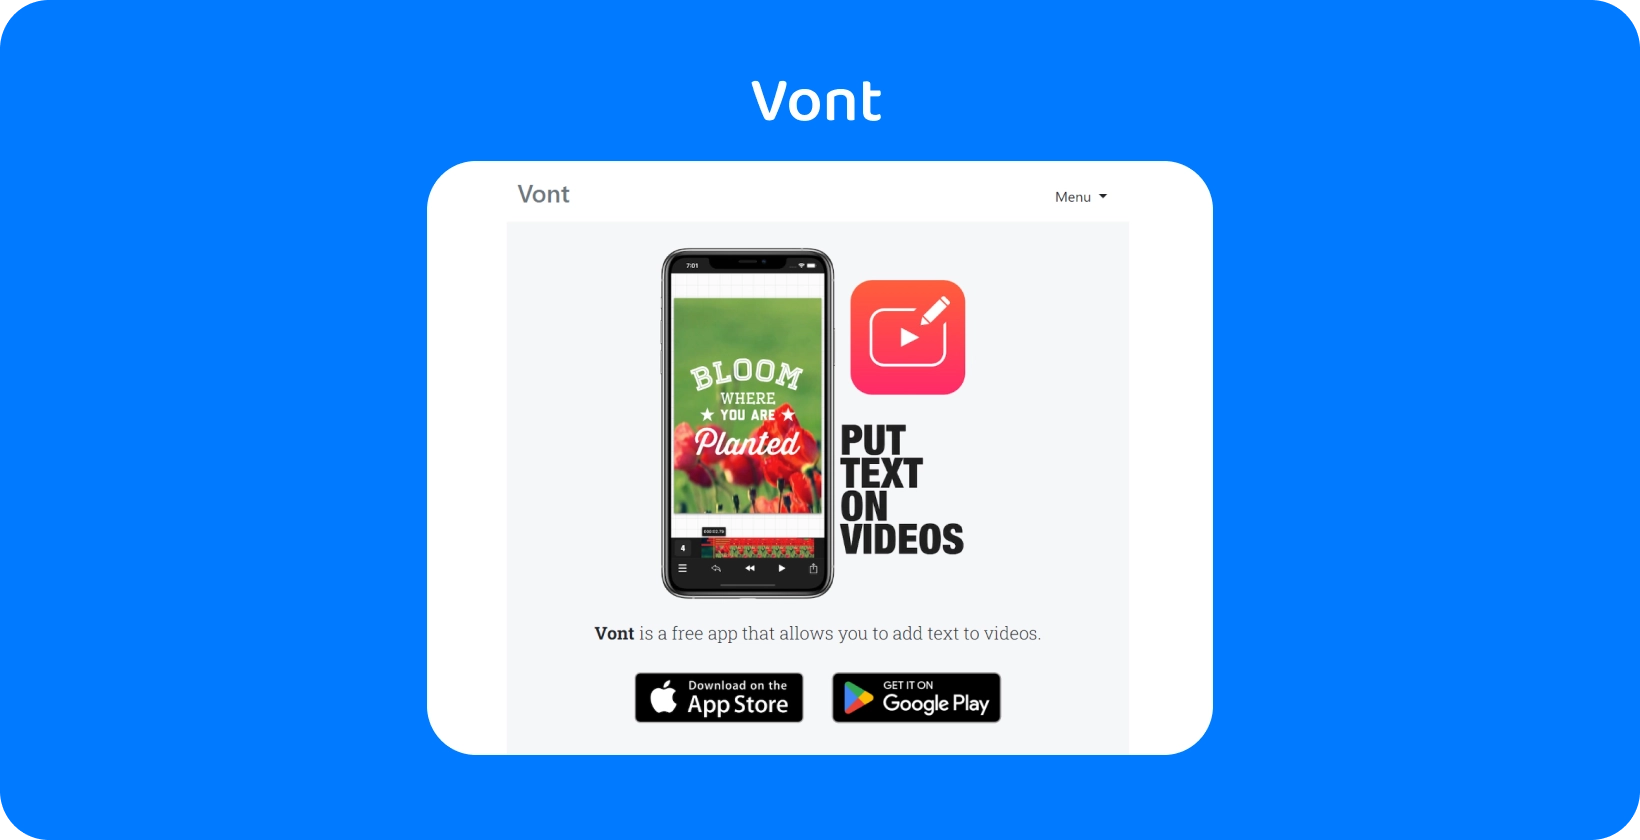 Паметен телефон кој прикажува Vont апликациски интерфејс, истакнувајќи ја неговата карактеристика за додавање текст на видеа, достапни на App Store и Google Play